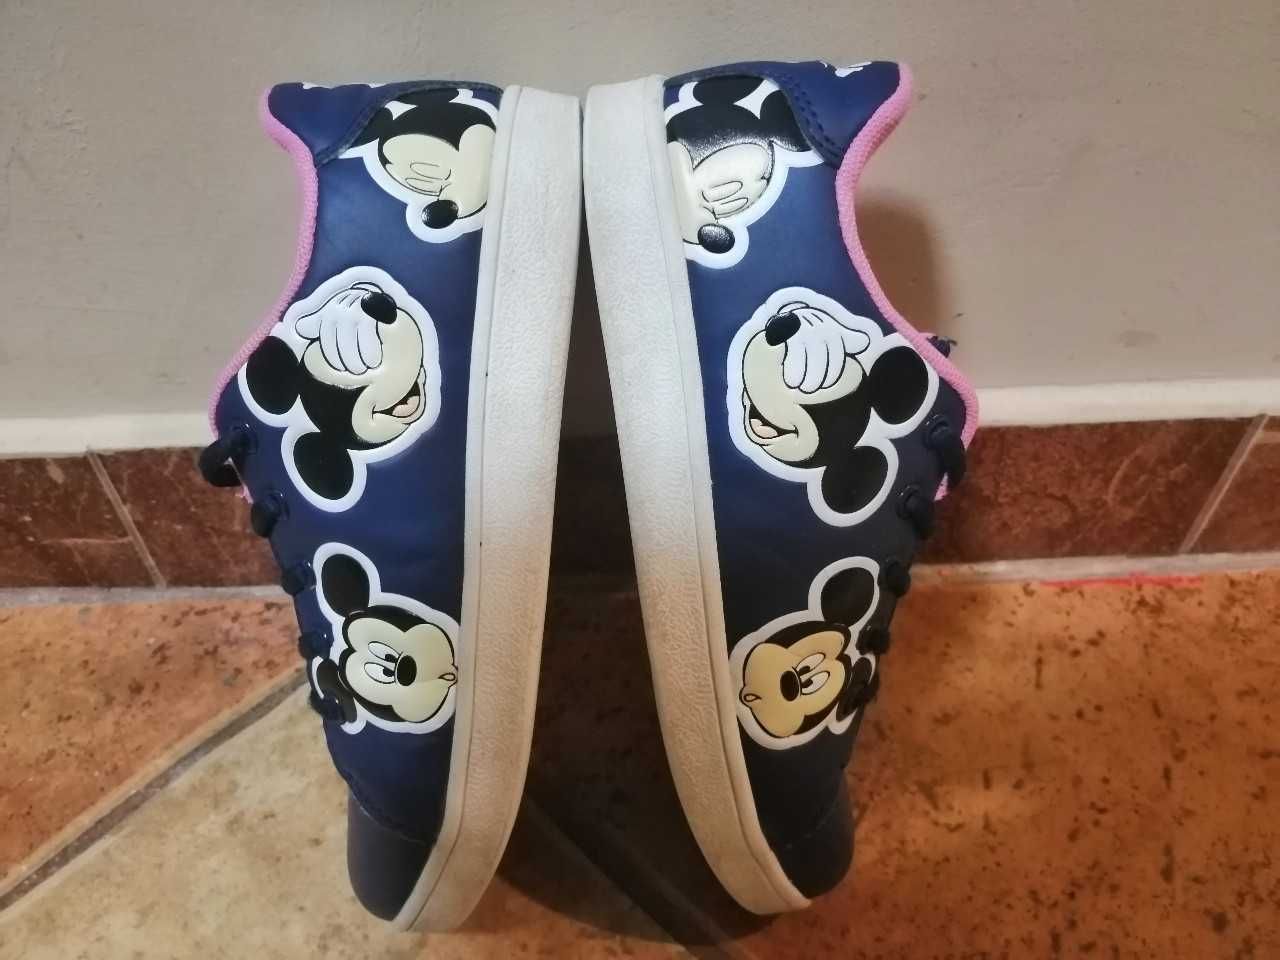 Mickey Mouse Disney buty rozm. 33 wkładka 22 cm granatowe